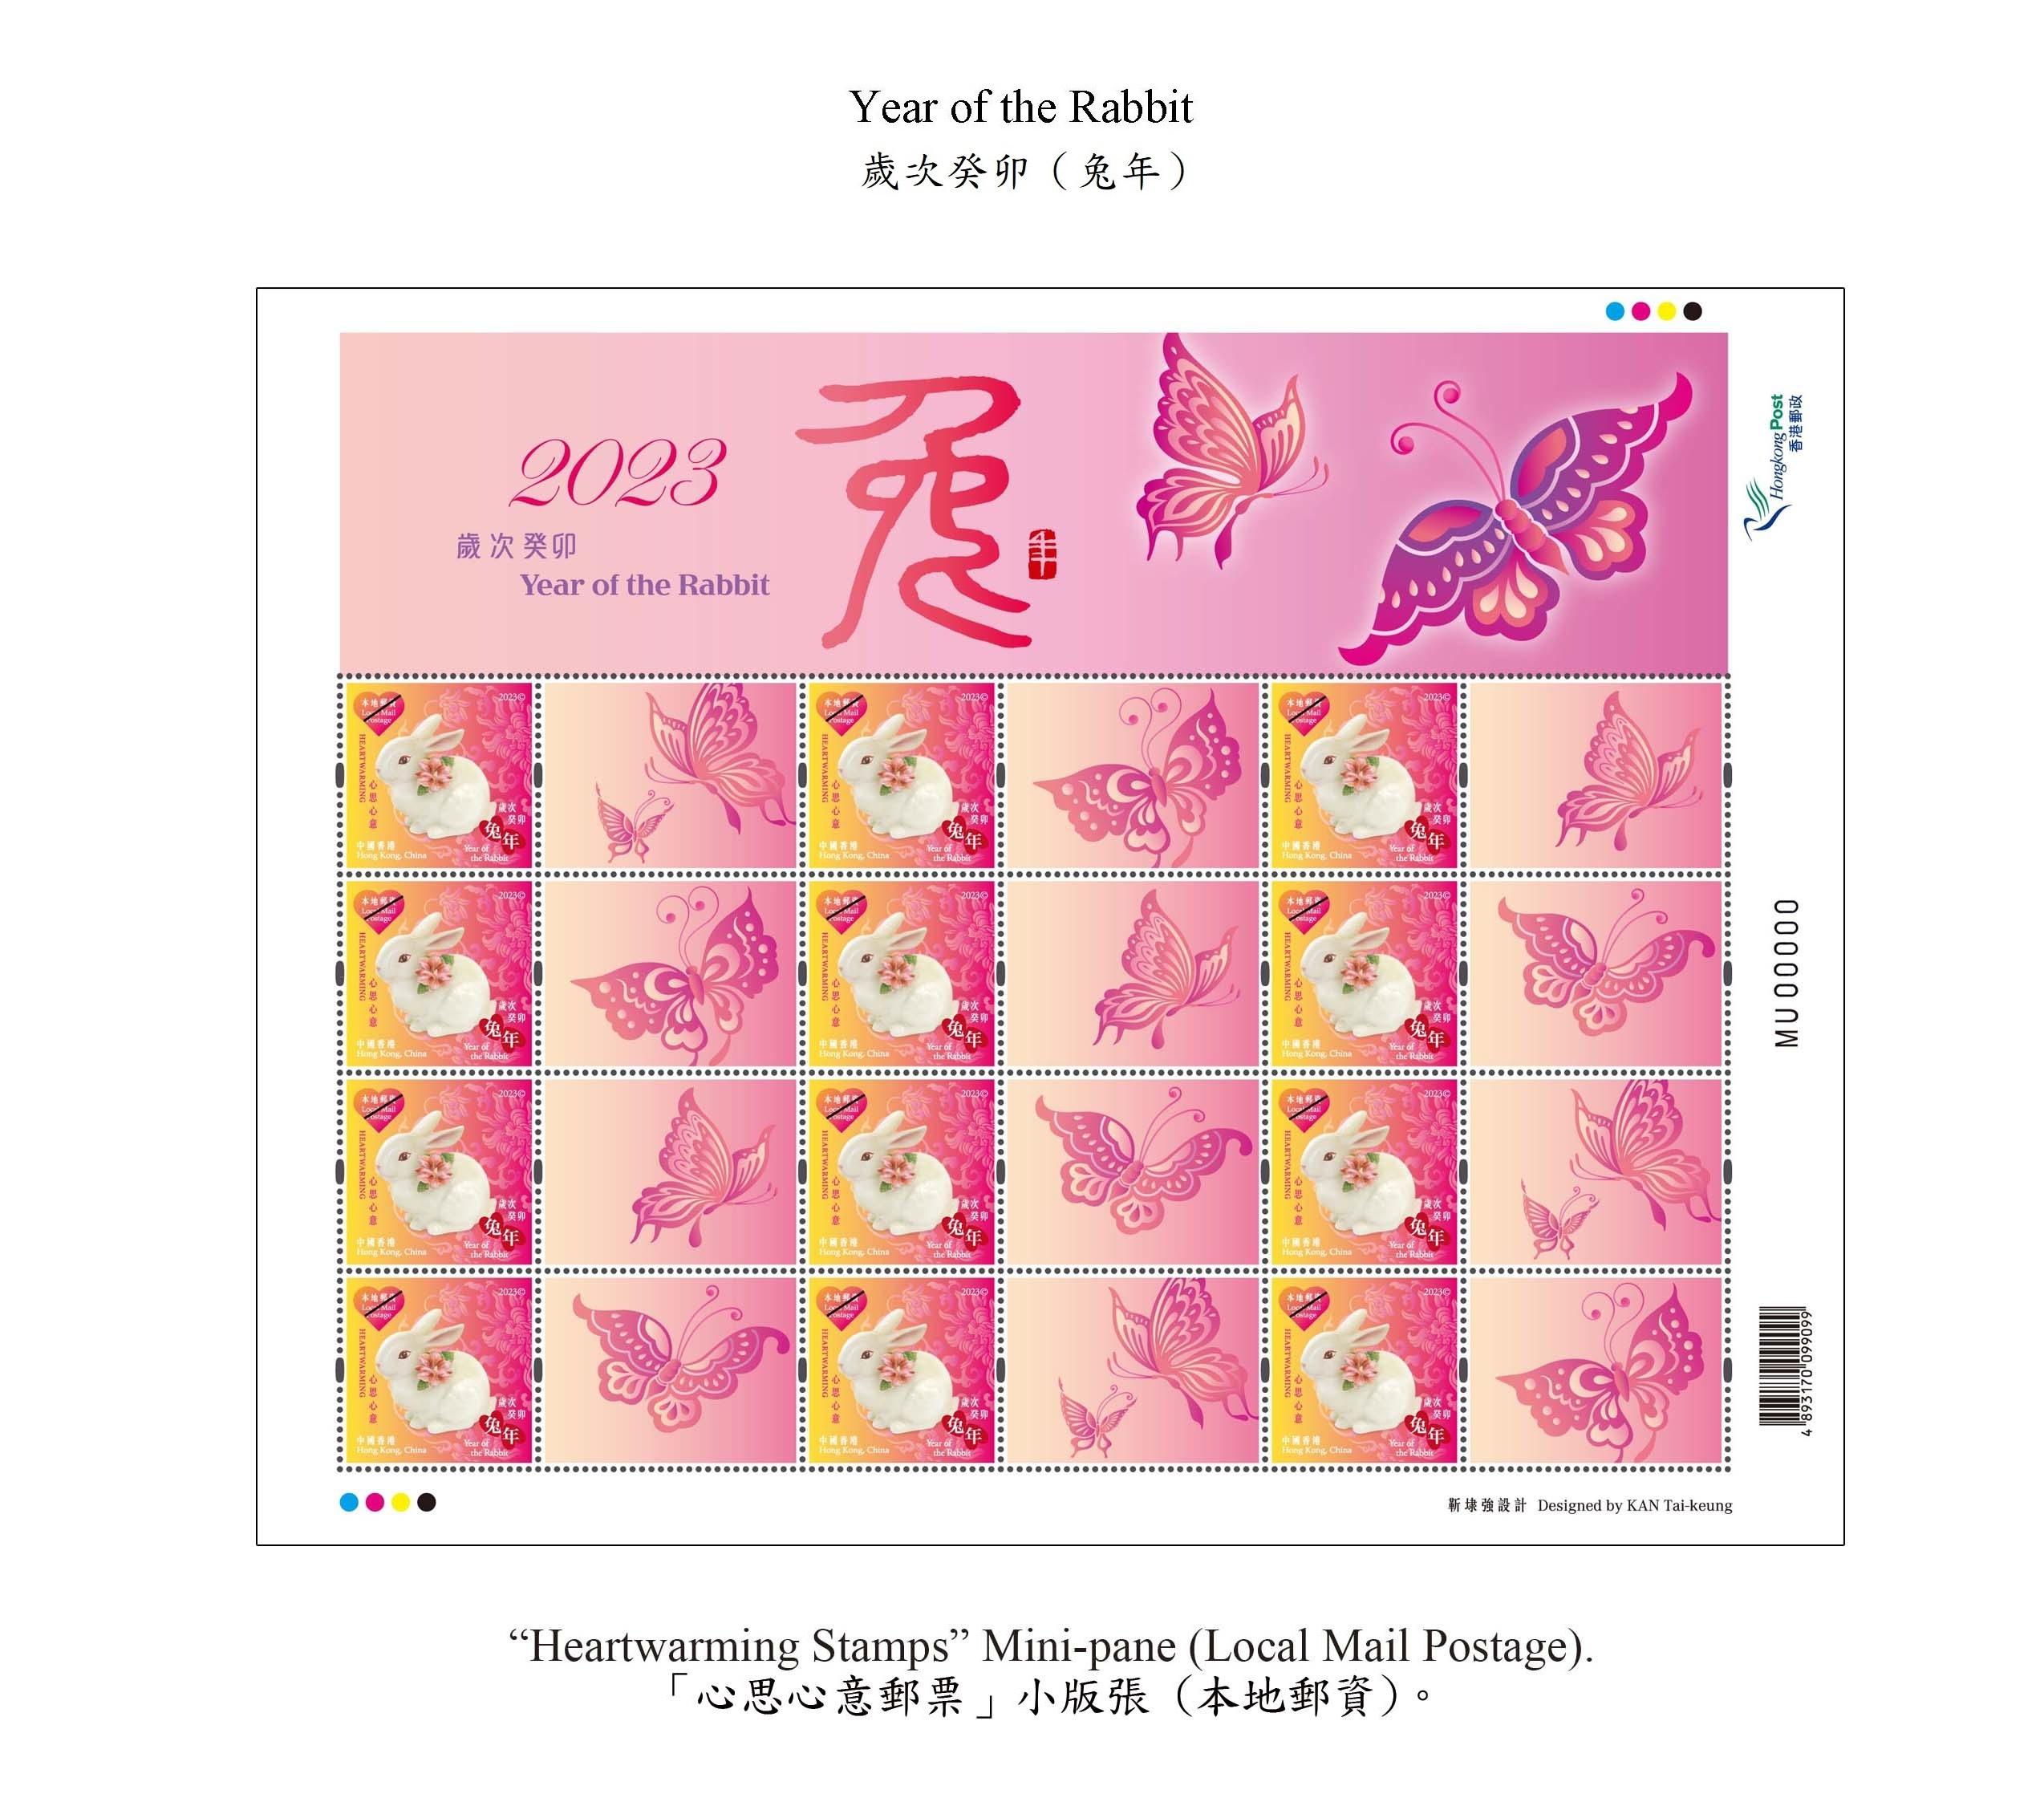 香港邮政二○二三年一月十日（星期二）发行以「岁次癸卯（兔年）」为题的特别邮票及相关集邮品。图示「心思心意邮票」小版张 （本地邮资）。
